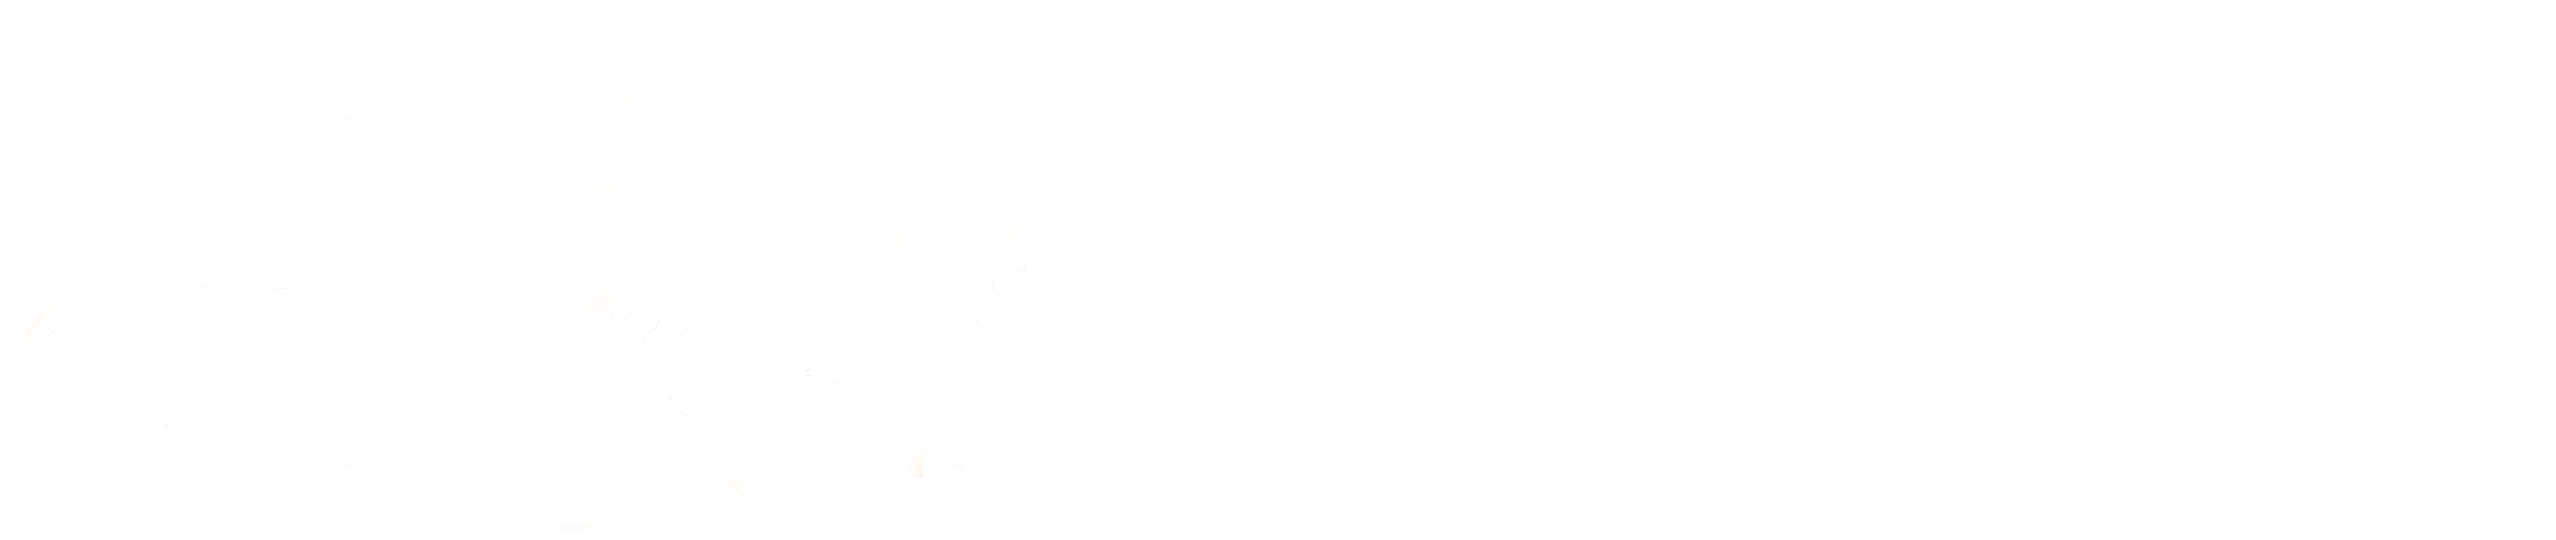 Logo Ad Baan trouwkoetsen in wit